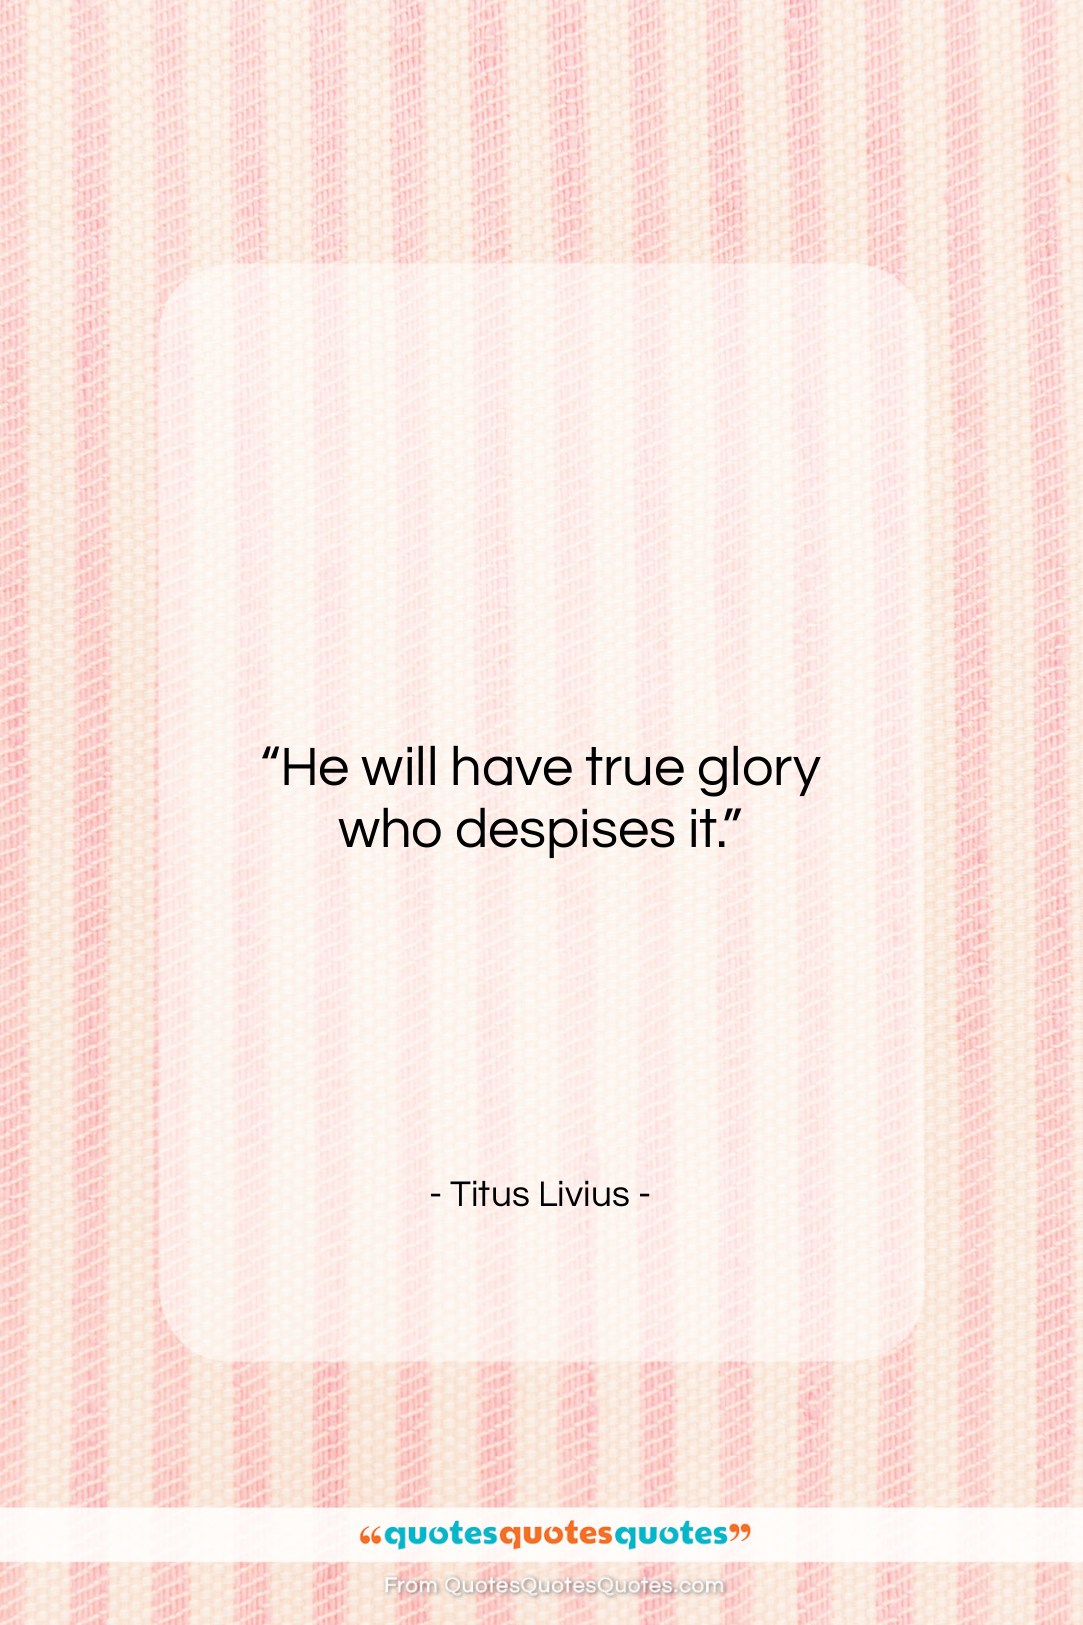 Titus Livius quote: “He will have true glory who despises…”- at QuotesQuotesQuotes.com